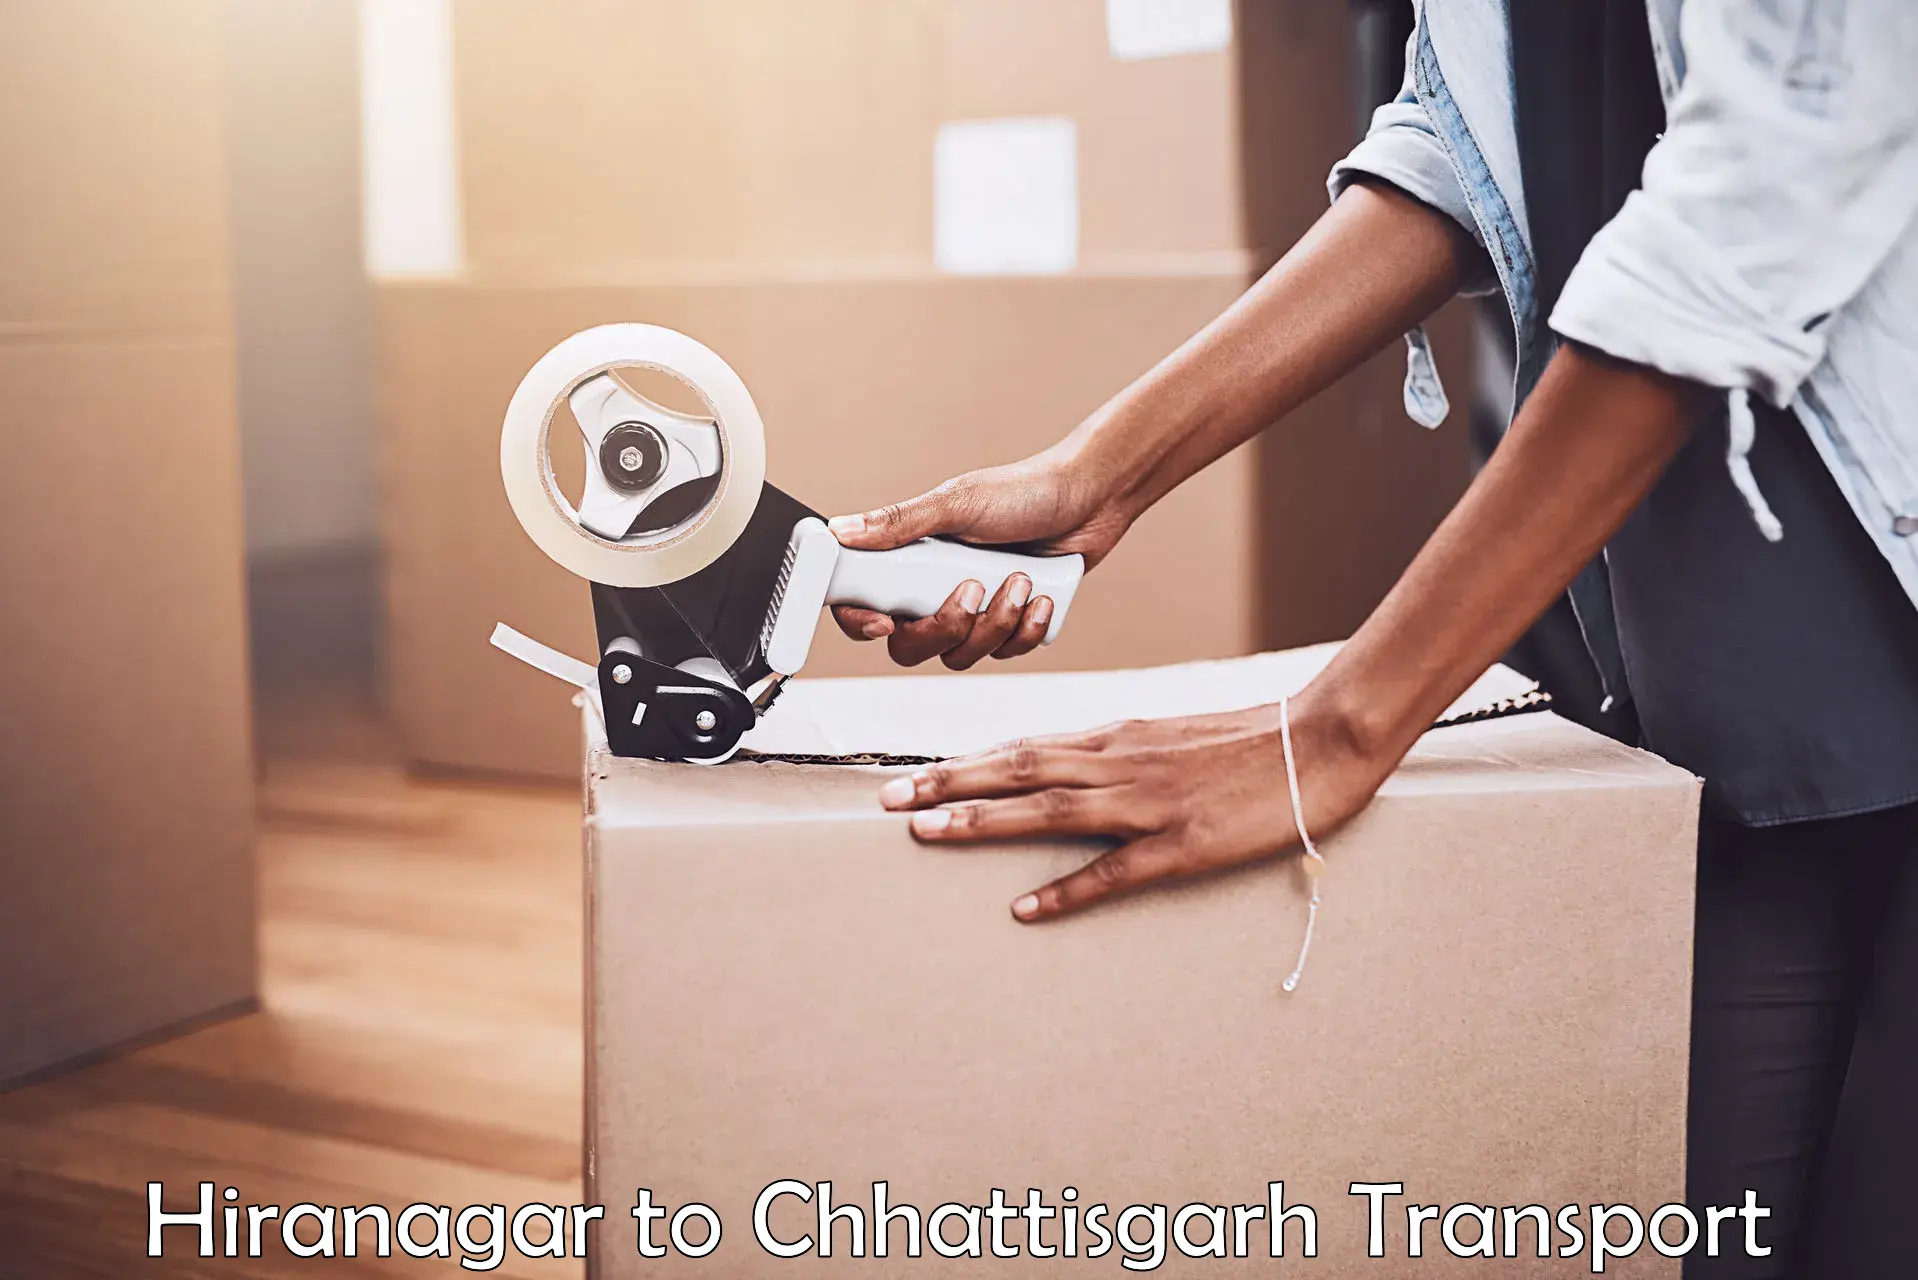 Interstate transport services Hiranagar to Chhattisgarh